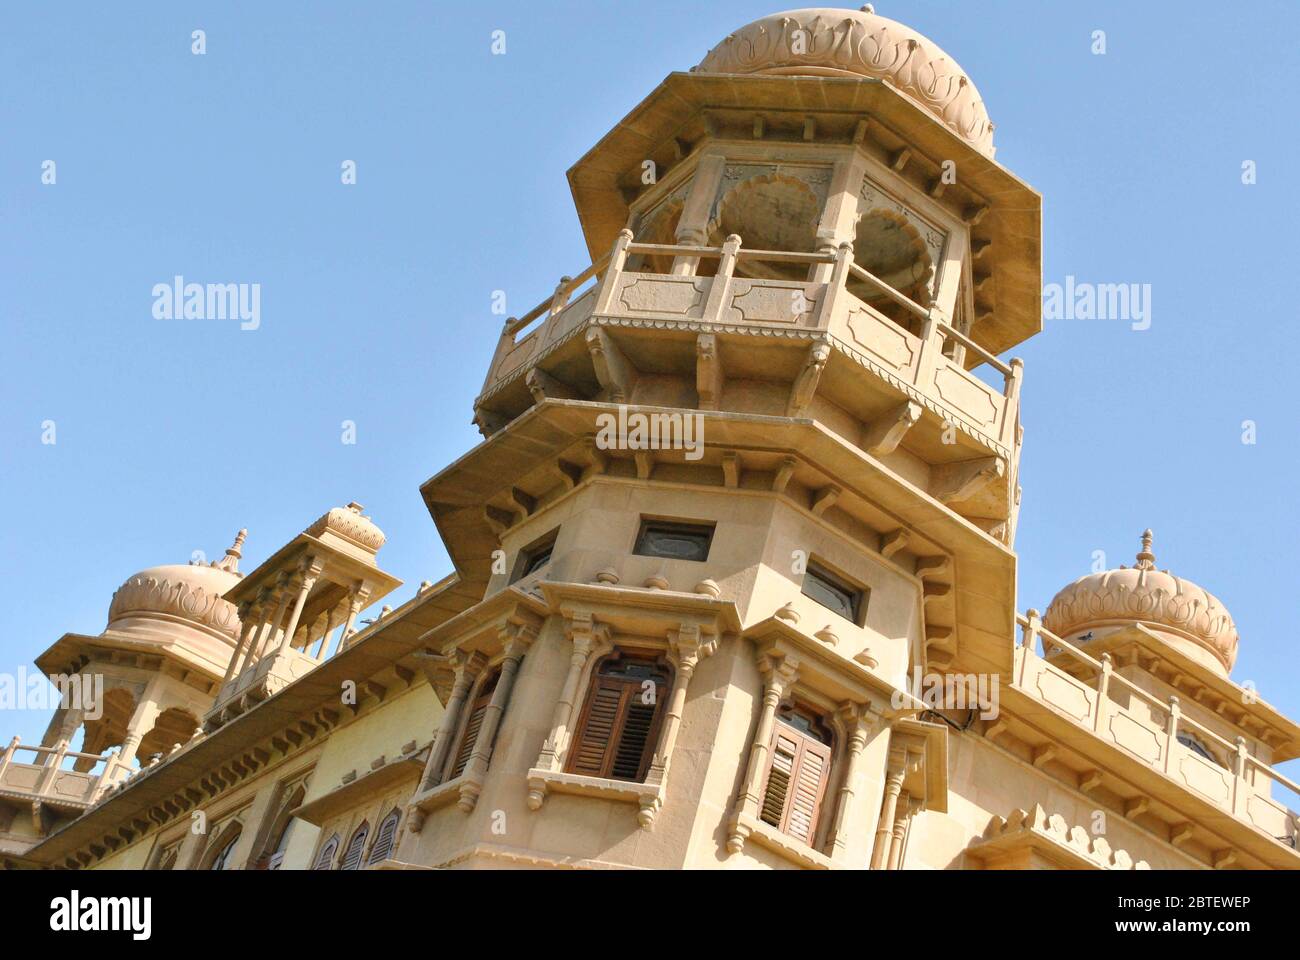 Mohatta Palace - Beautiful Landmark in Clifton Karachi, Pakistan - 06/02/2011 Stock Photo